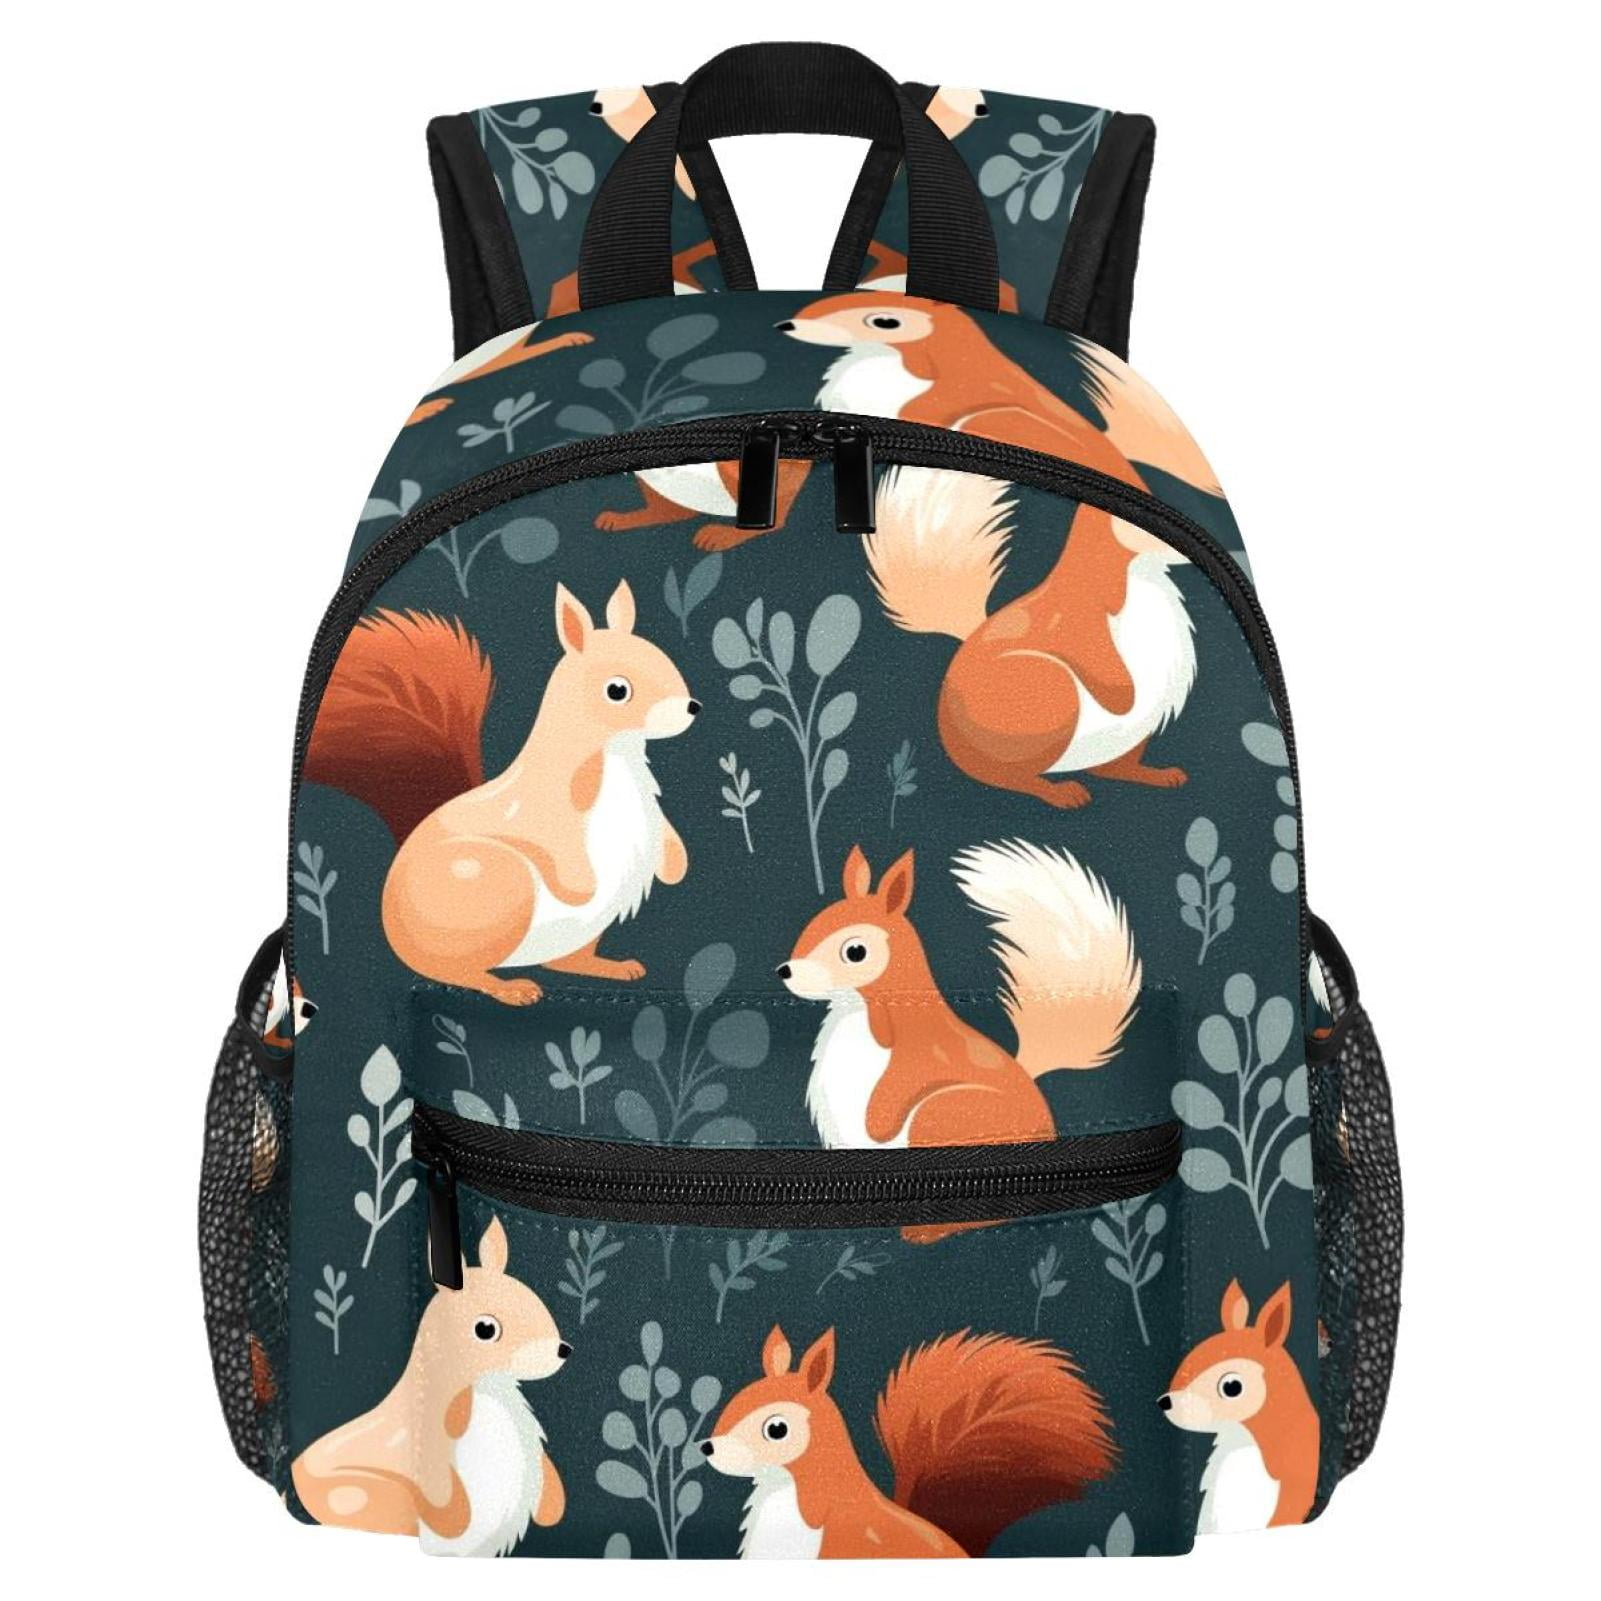 Squirrel Lightweight Printed Design Backpack with Adjustable Shoulder ...